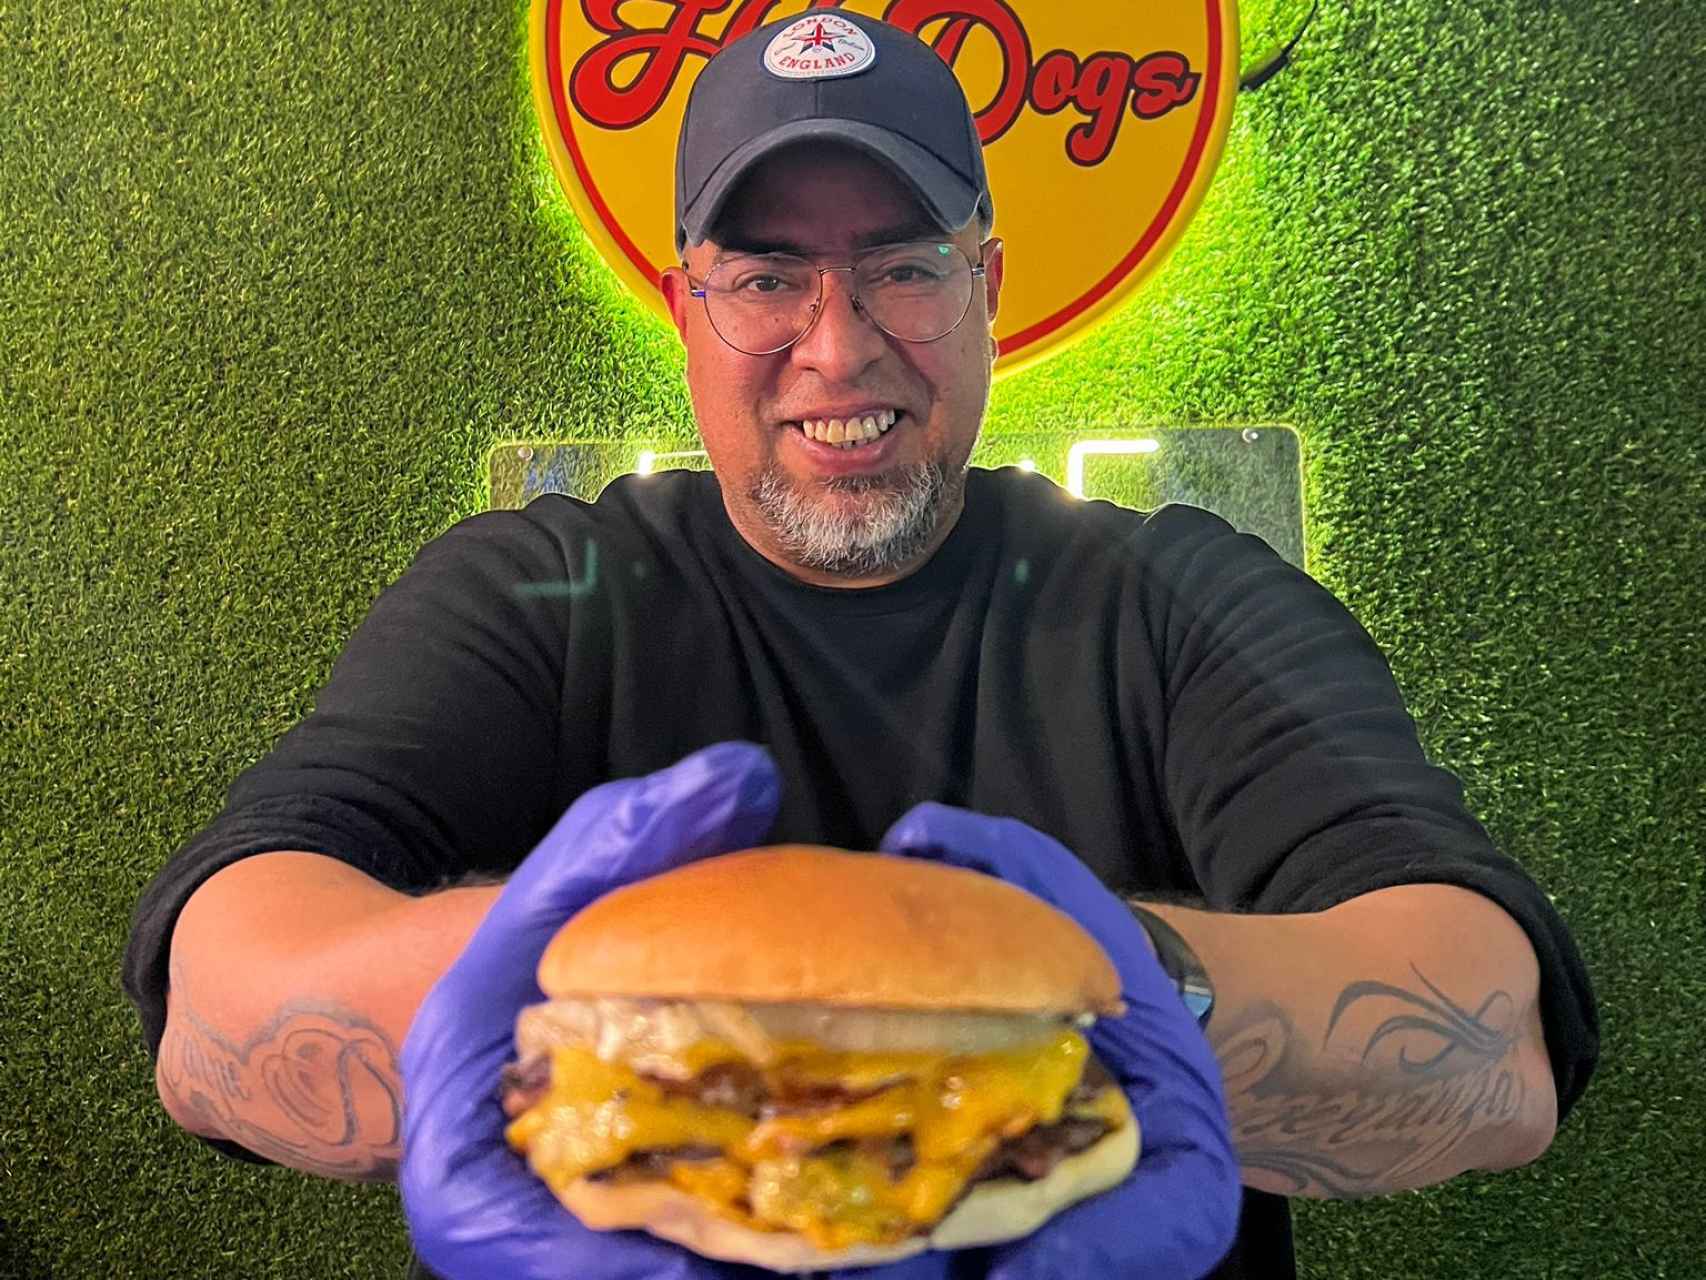 Joe Lastra, dueño de Hot Dogs Likes 1994, muestra una de sus hamburguesas.